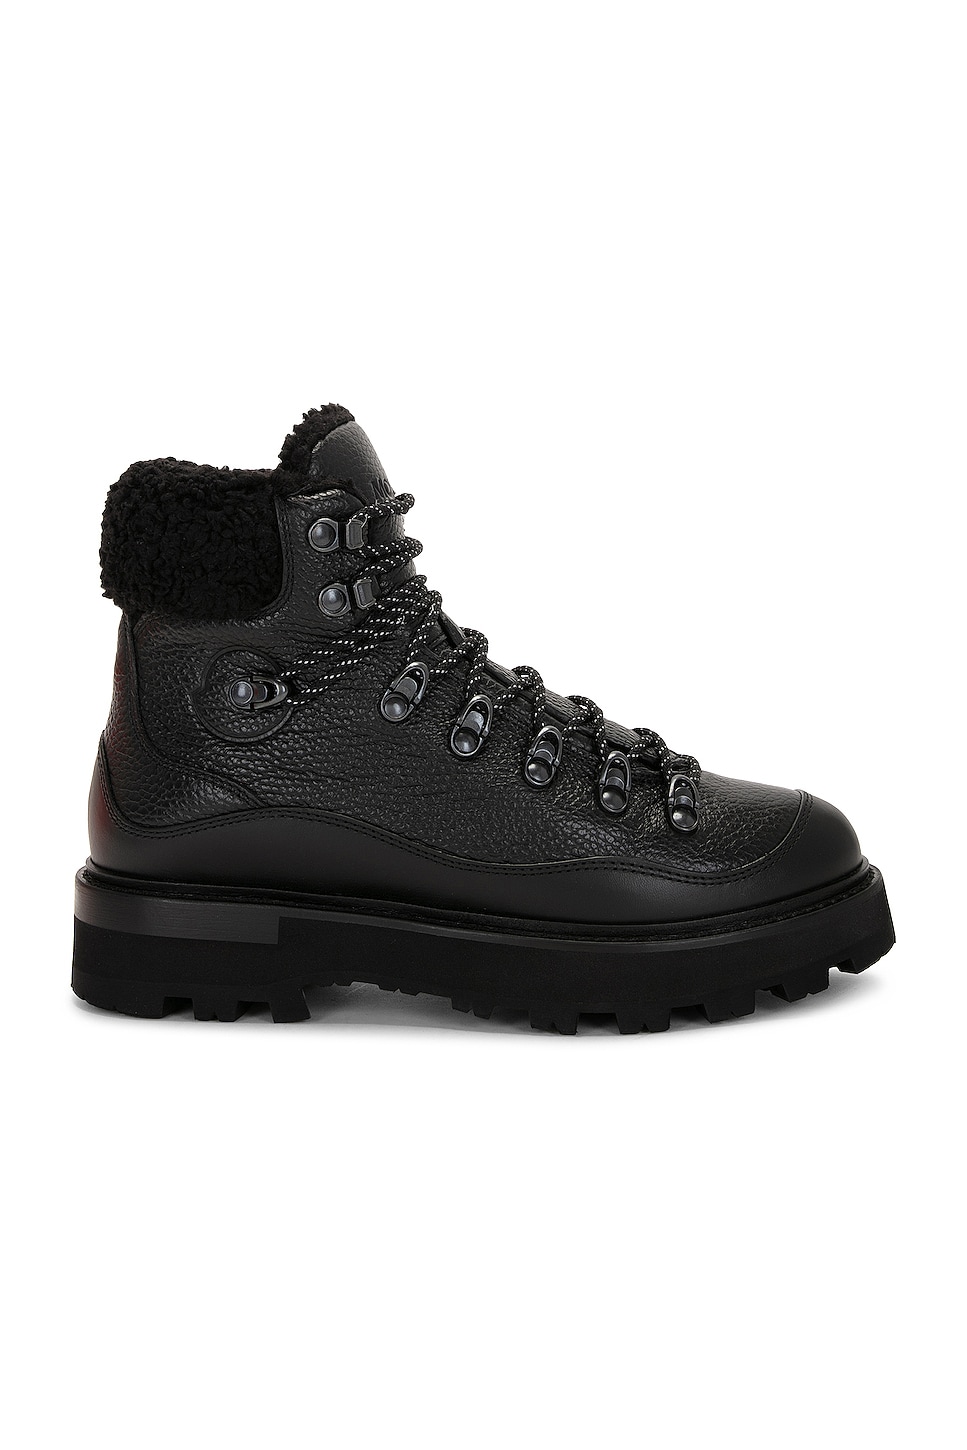 Image 1 of Moncler Peka Trek Hiking Boot in Black